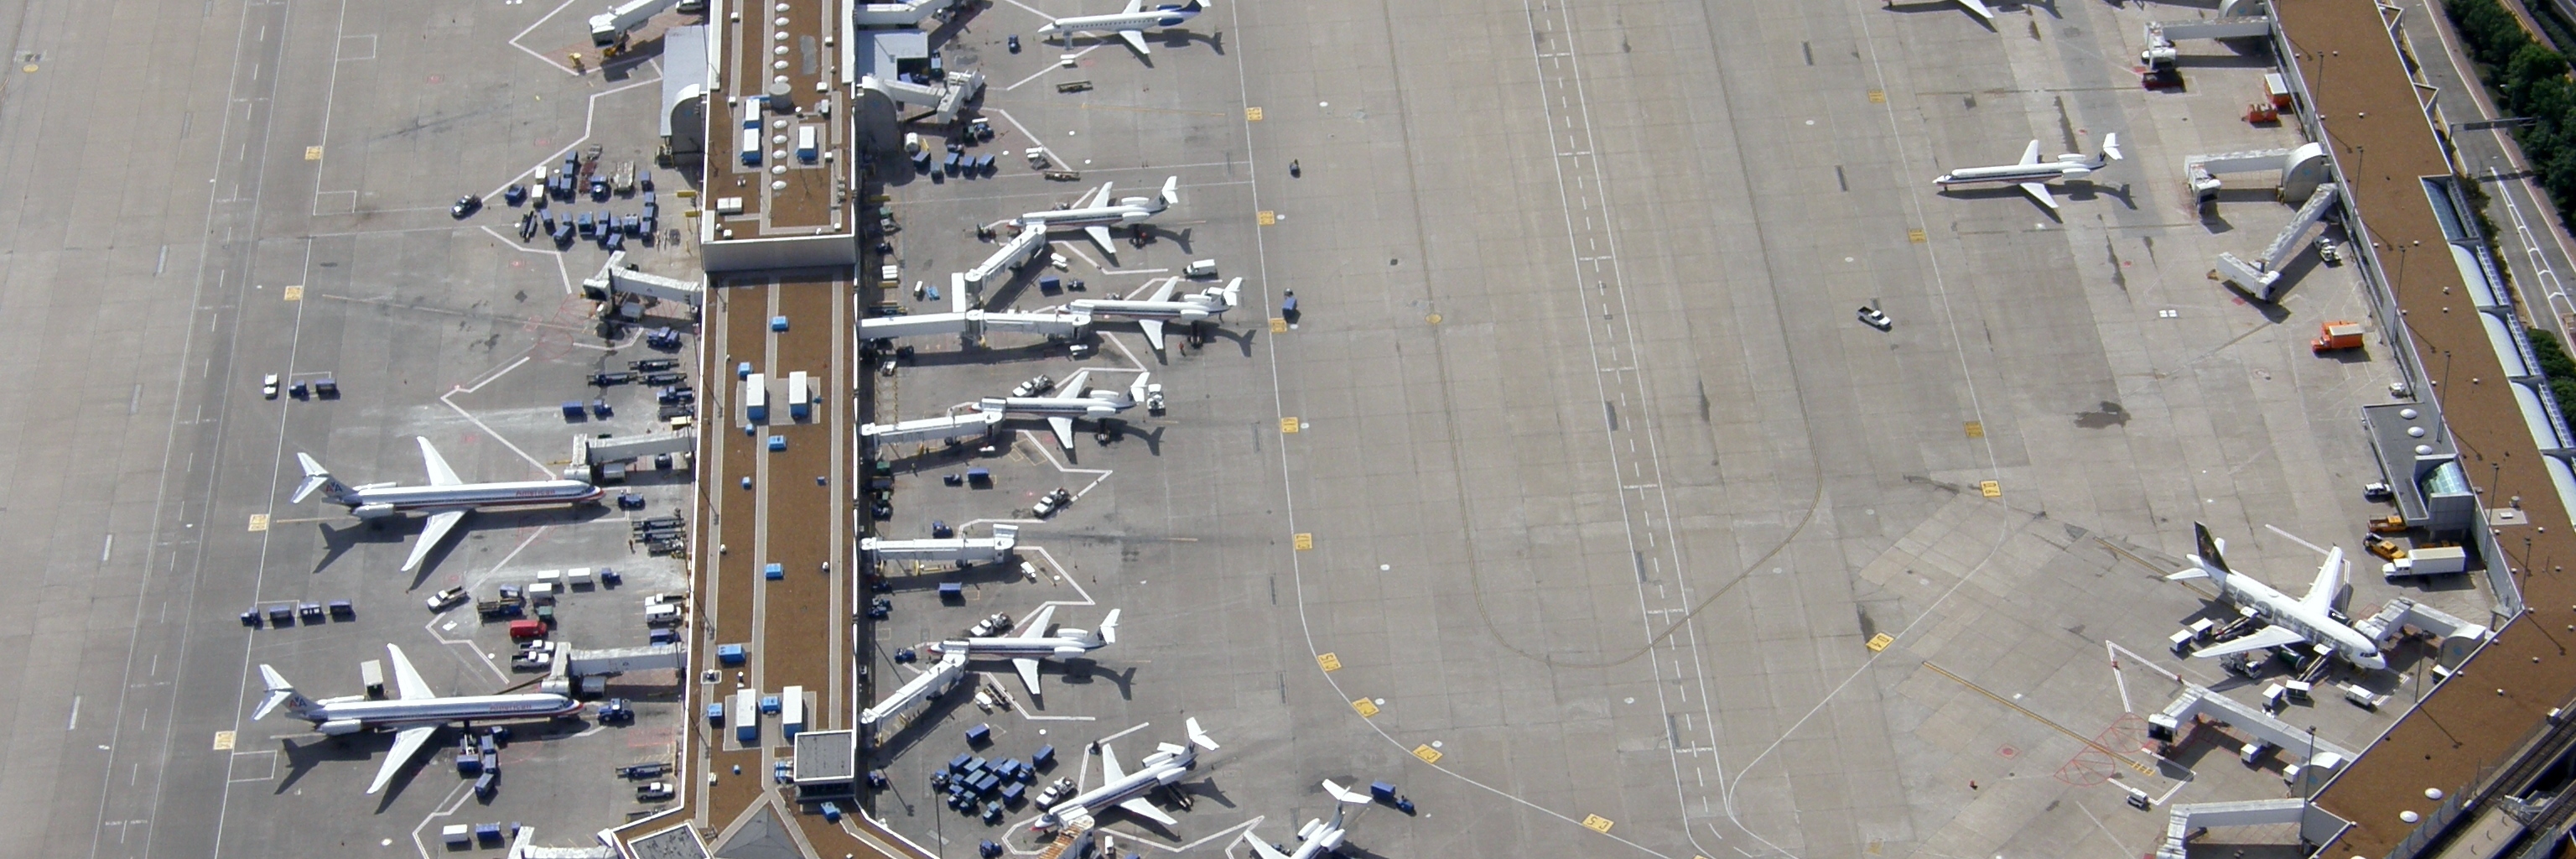 Der Absturz eines Flugzeugs erschüttert. Wie gehen Versicherer mit dem Risiko um?